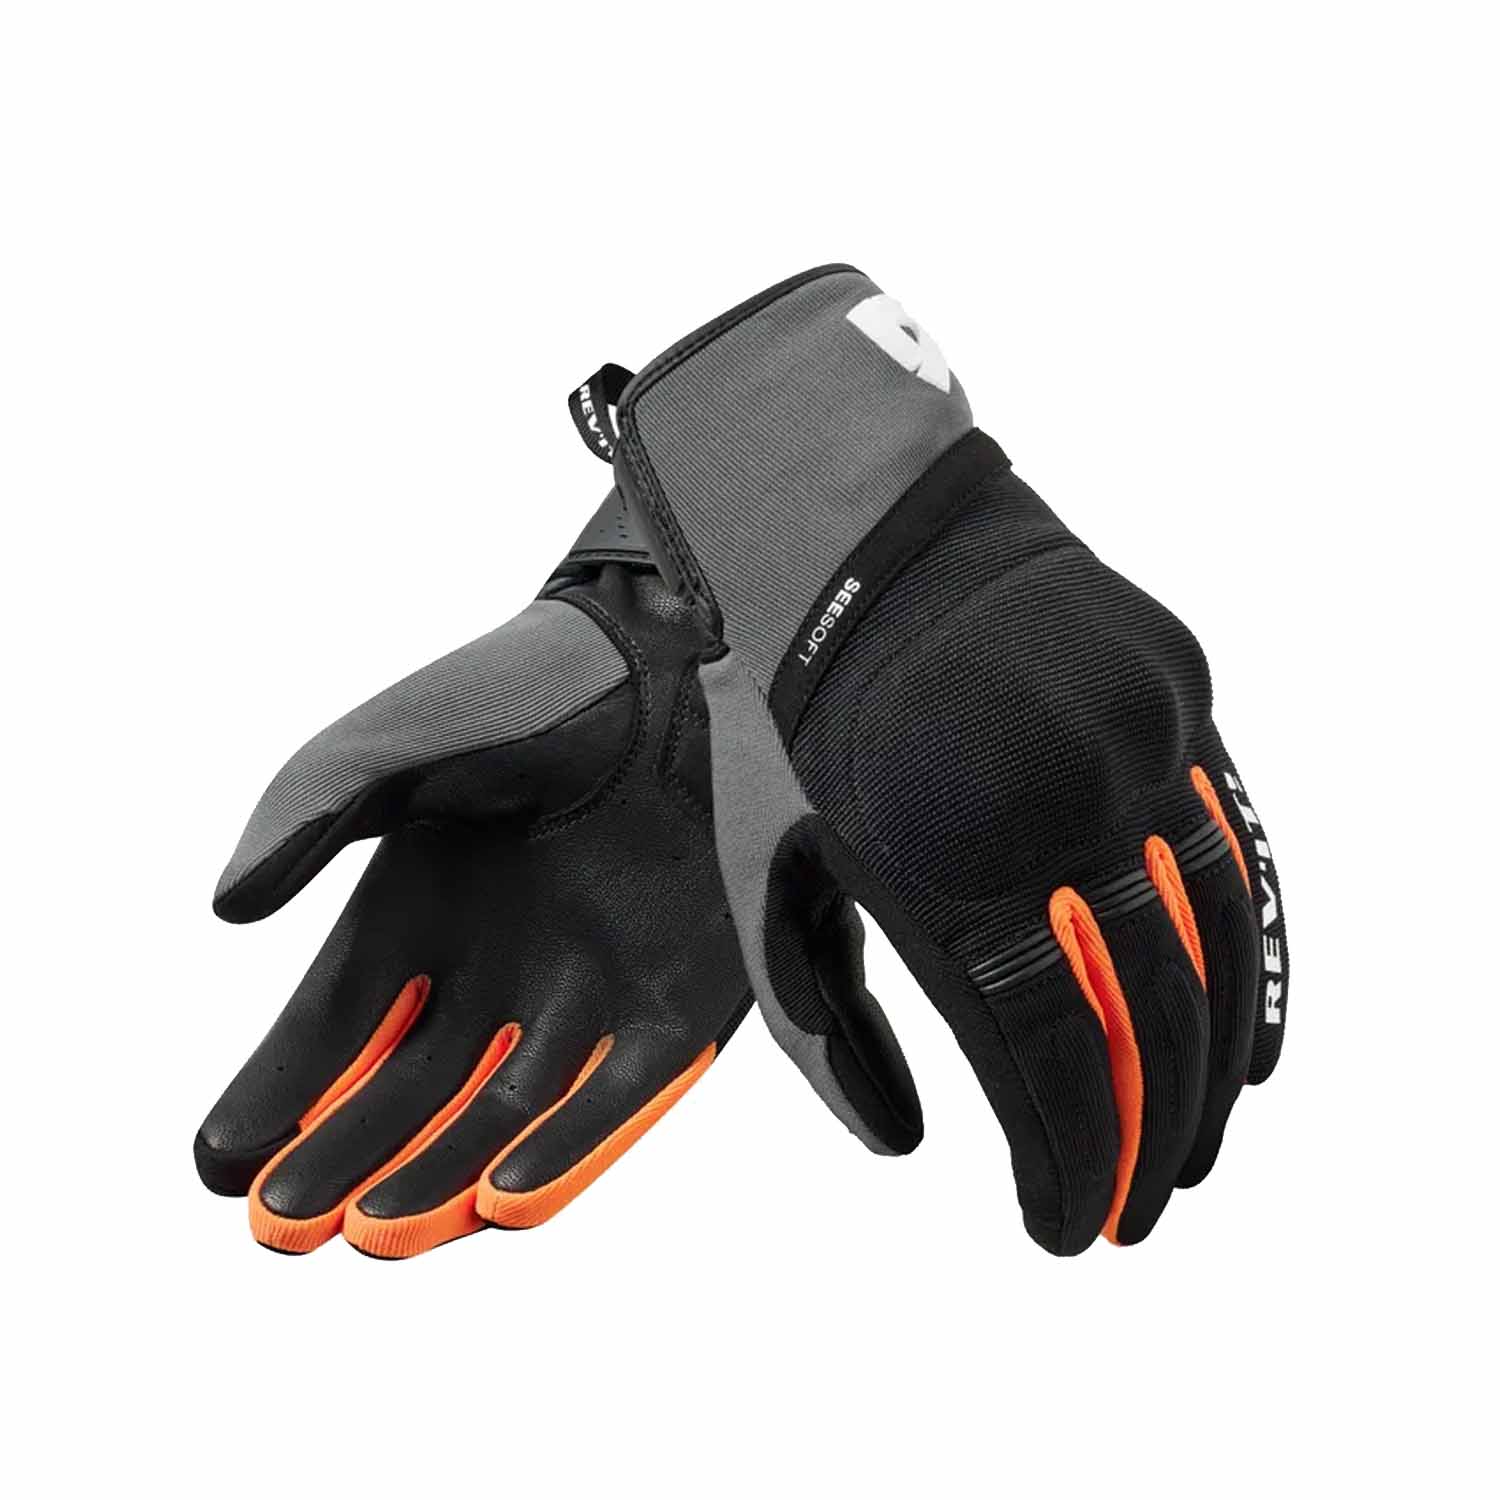 Image of REV'IT! Mosca 2 Gloves Black Orange Größe S